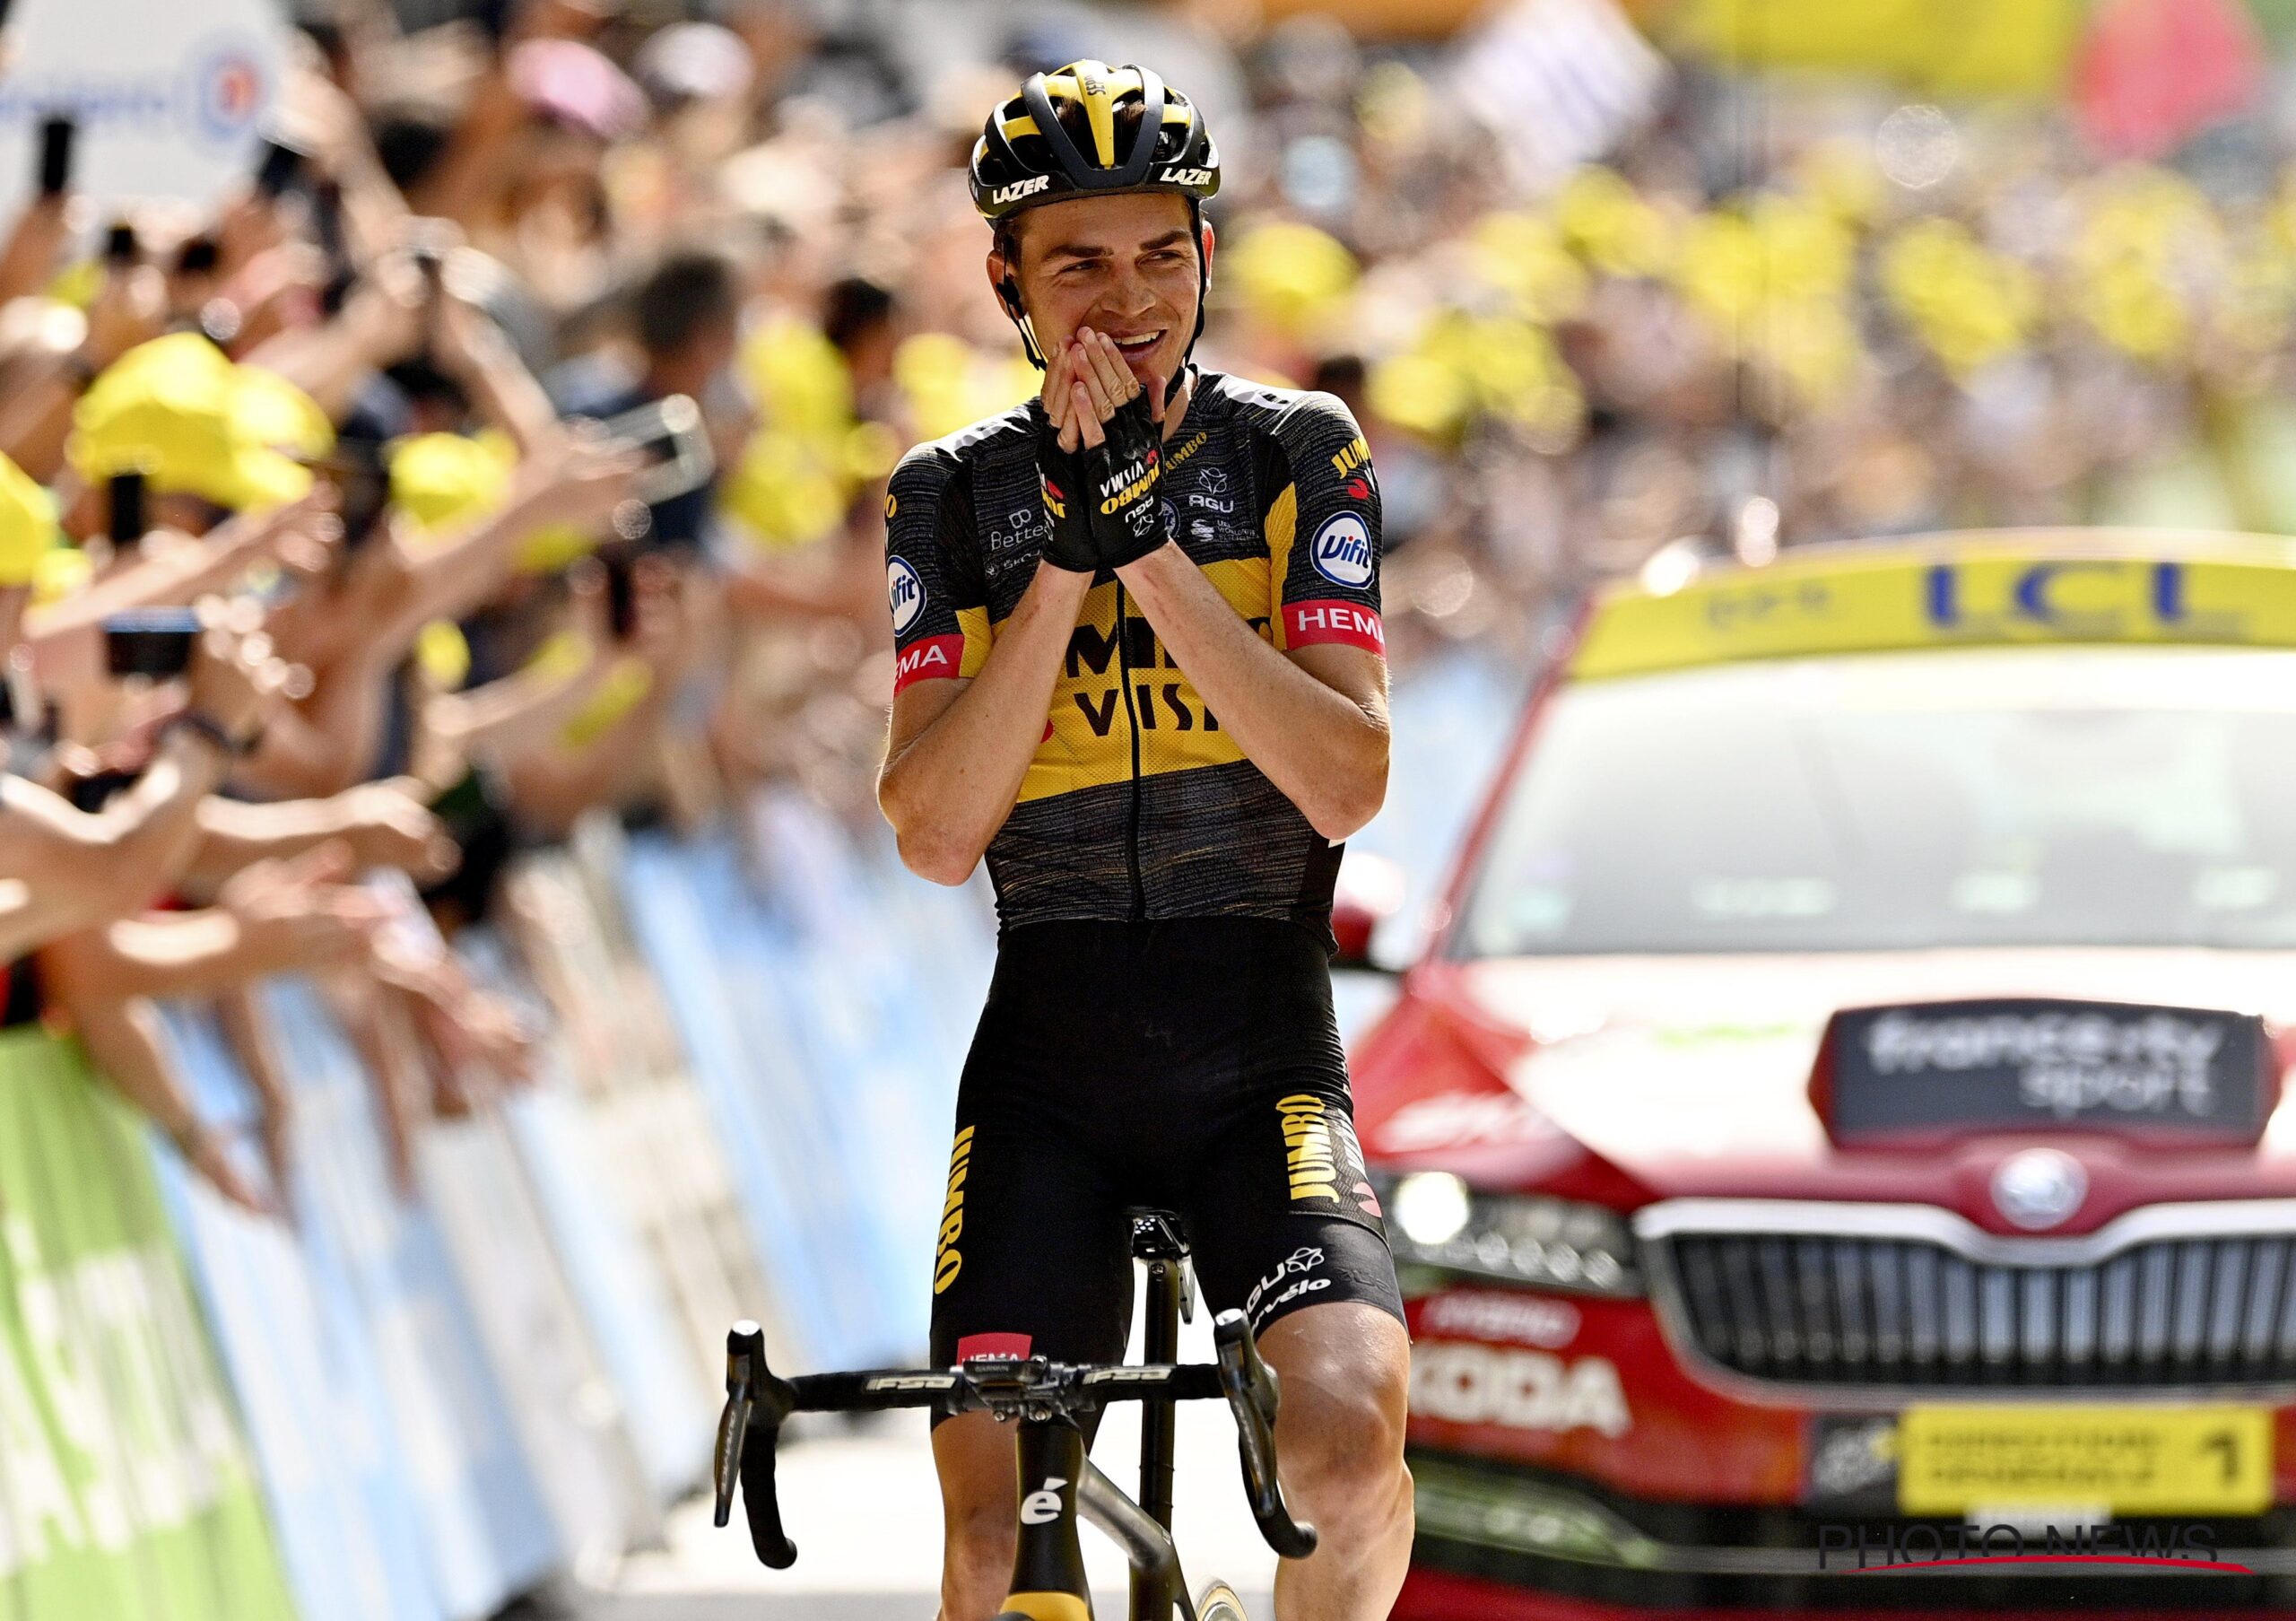 INSCYD user Sepp Kuss wins stage Tour de France 2021